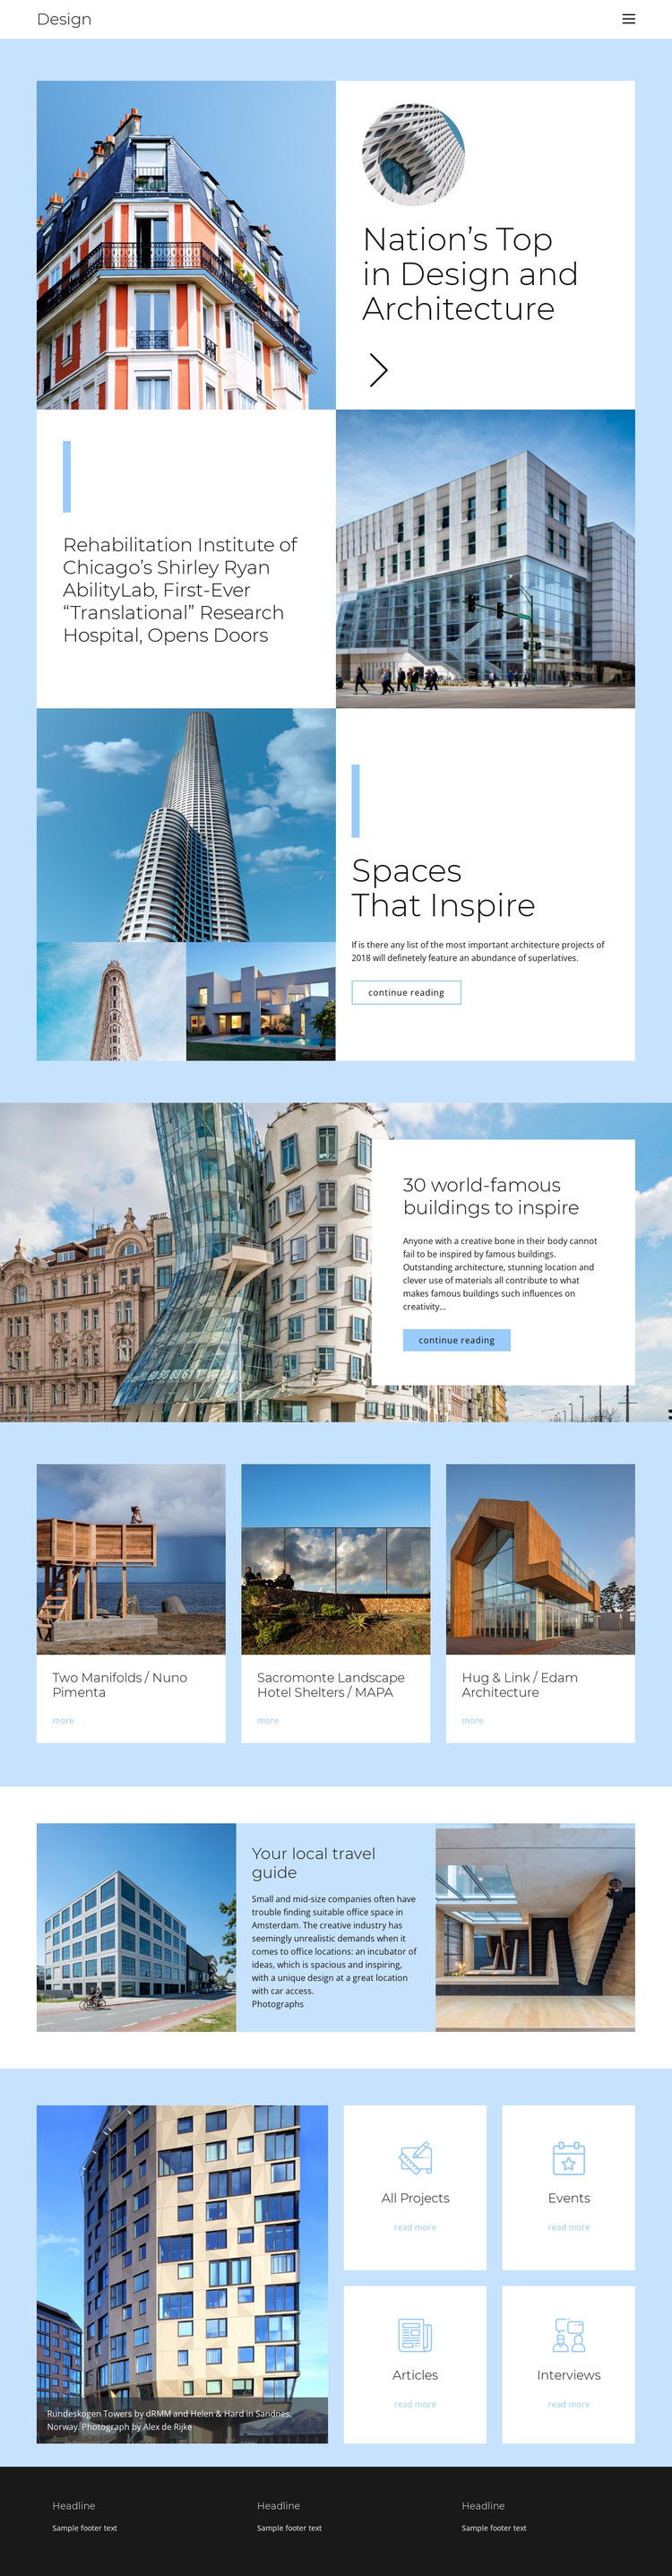 Architecture city guide Joomla Template